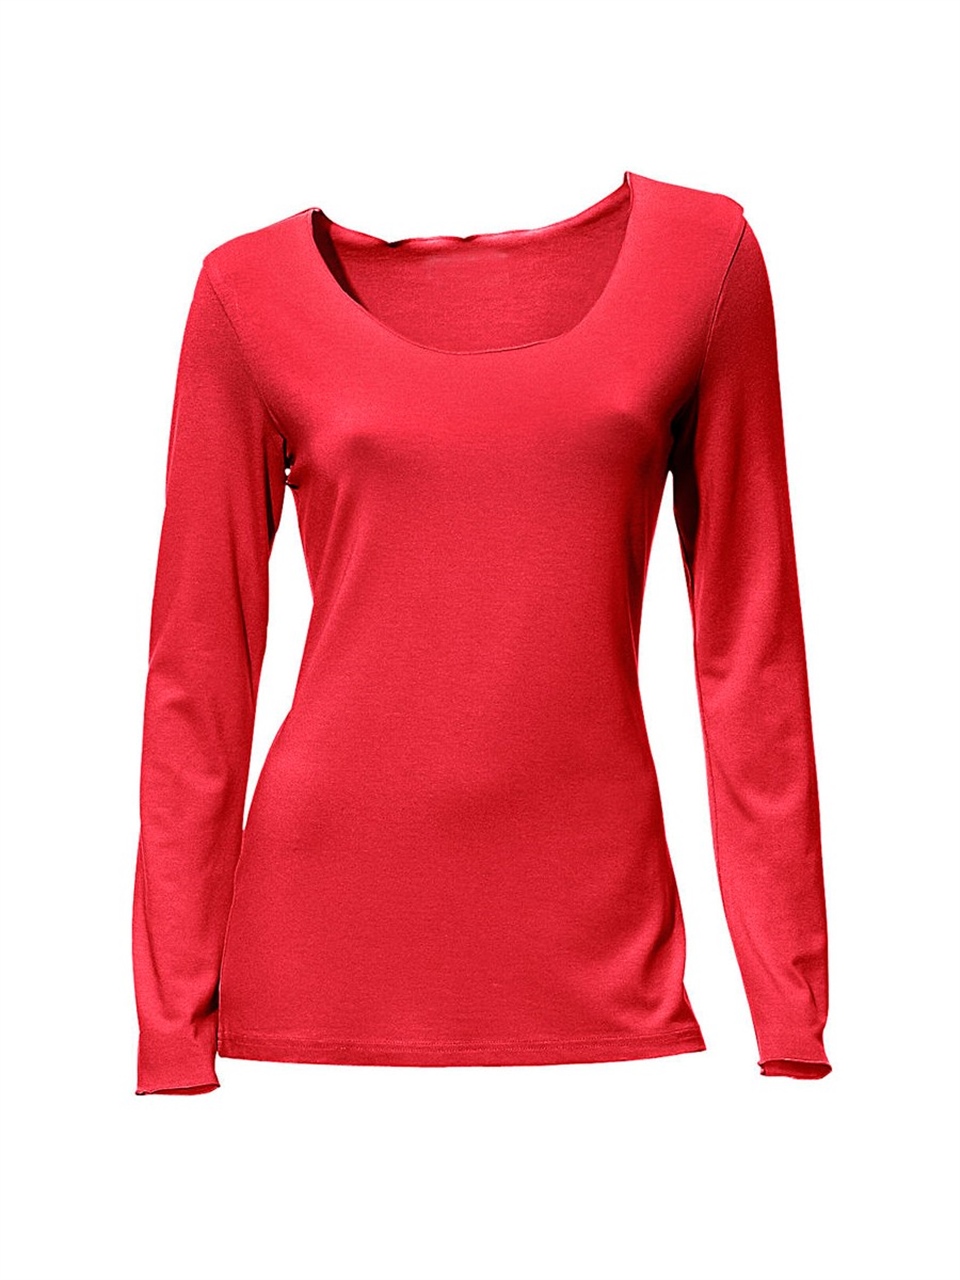 Bulalgiy'in Basic Uzun Kollu Tişört - Kırmızı modelini incelemek ve sipariş  vermek için tıkla!